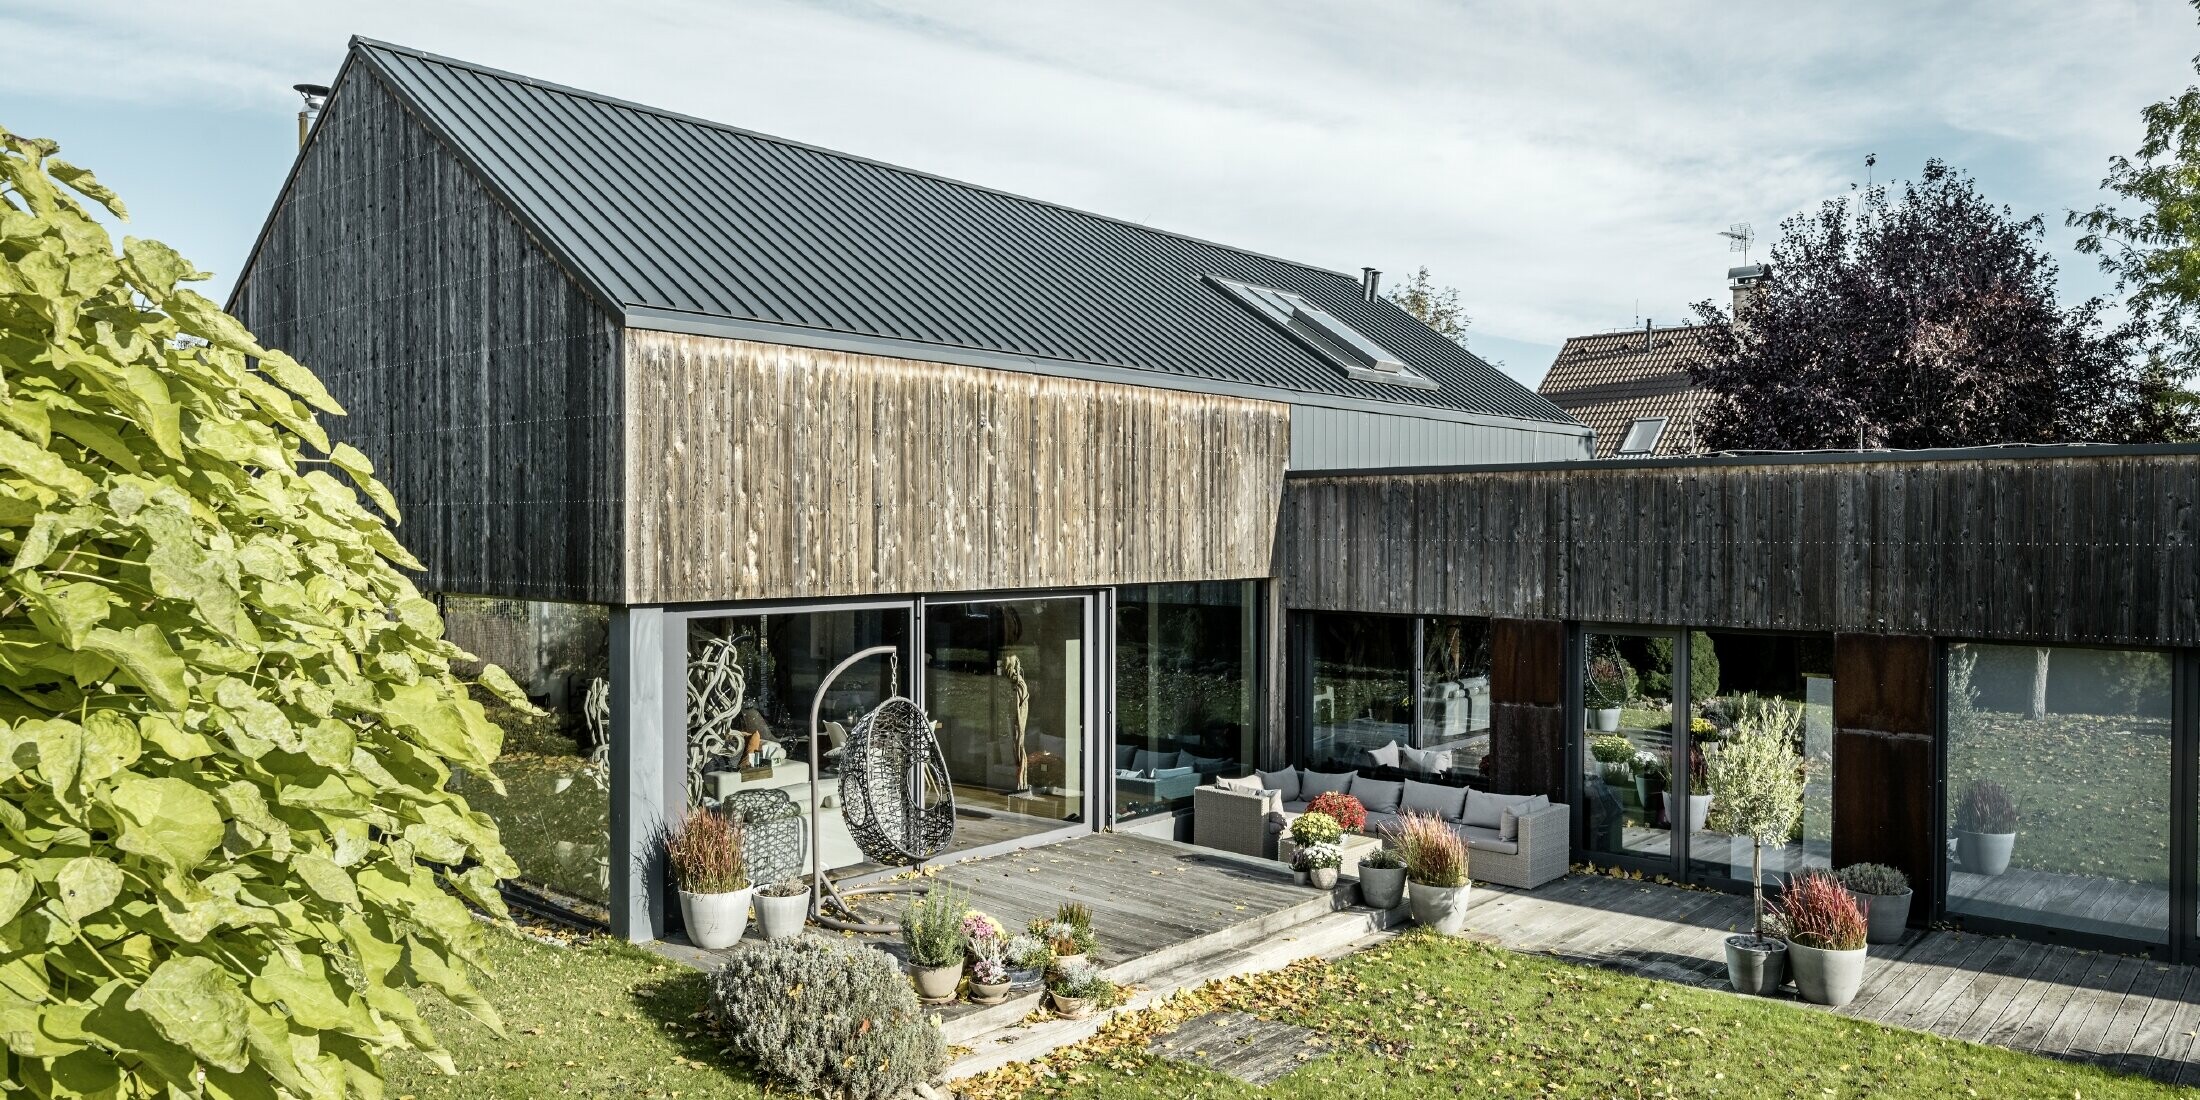 Einfamilienhaus mit Satteldach, eingedeckt mit Doppelstehfalz PREFALZ in Anthrazit und verwitterter Holzfassade. Mit schöner Holzterrasse und großen Fensterflächen im Erdgeschoss.